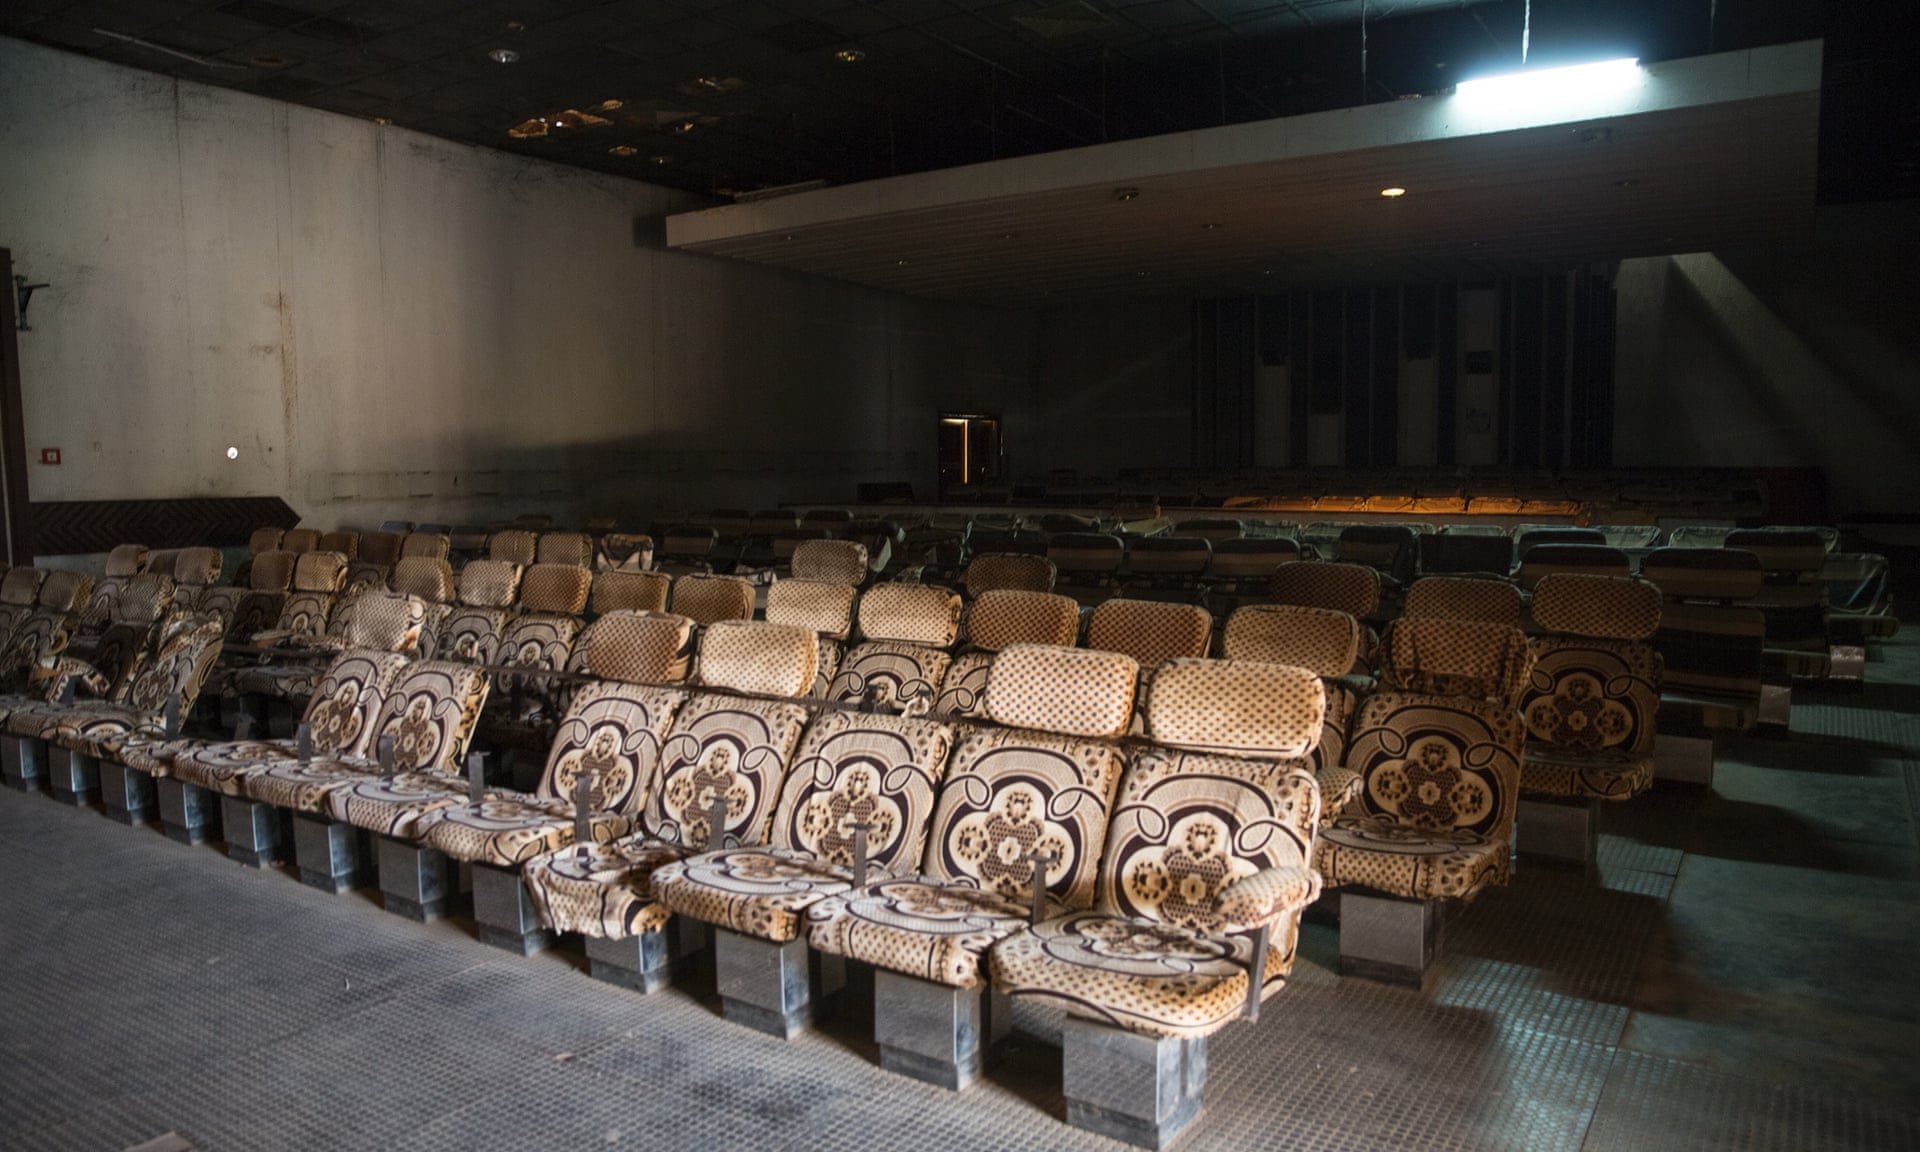 Nem as cadeiras do cinema do Hotel sobreviveram à ação do tempo (Fonte: The Guardian/Reprodução)